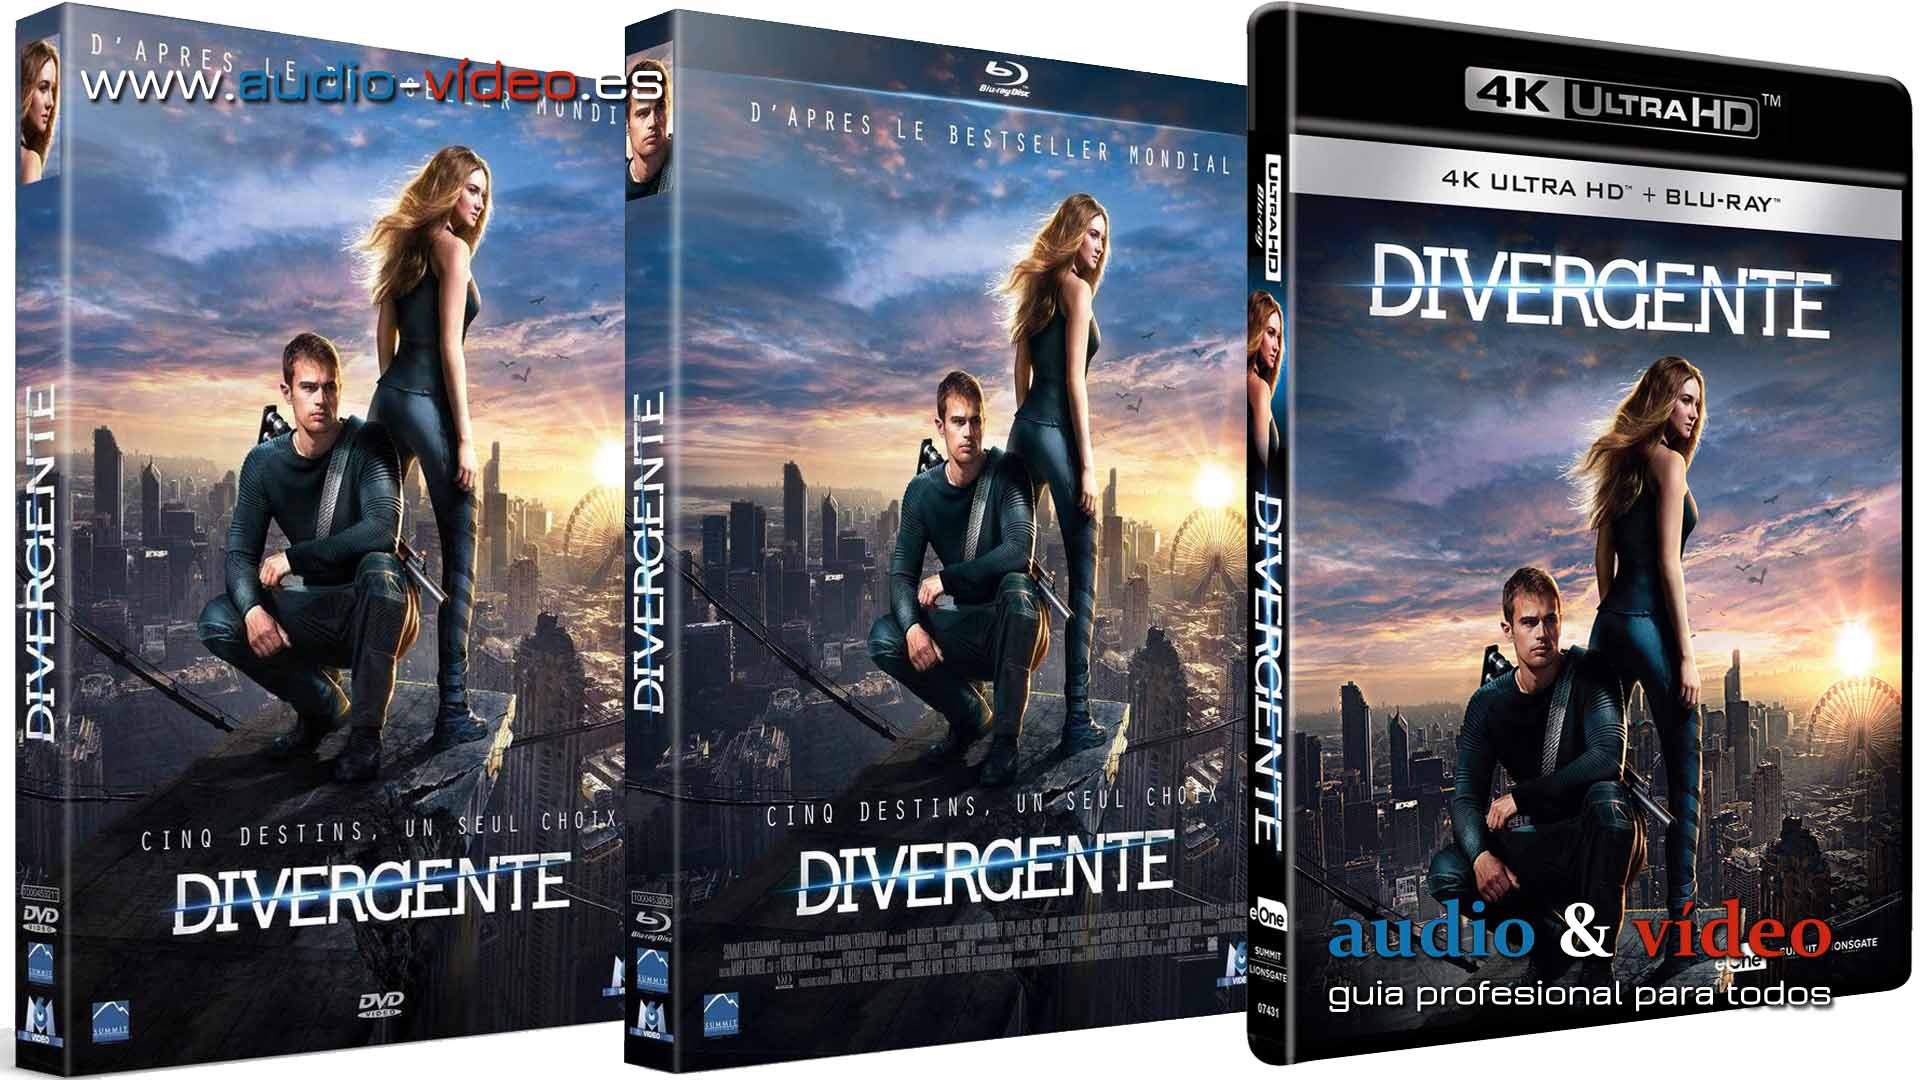 Divergente - 4K, UHD, BluRay, DVD + trailer HD + 3 películas completas +  soundtrack